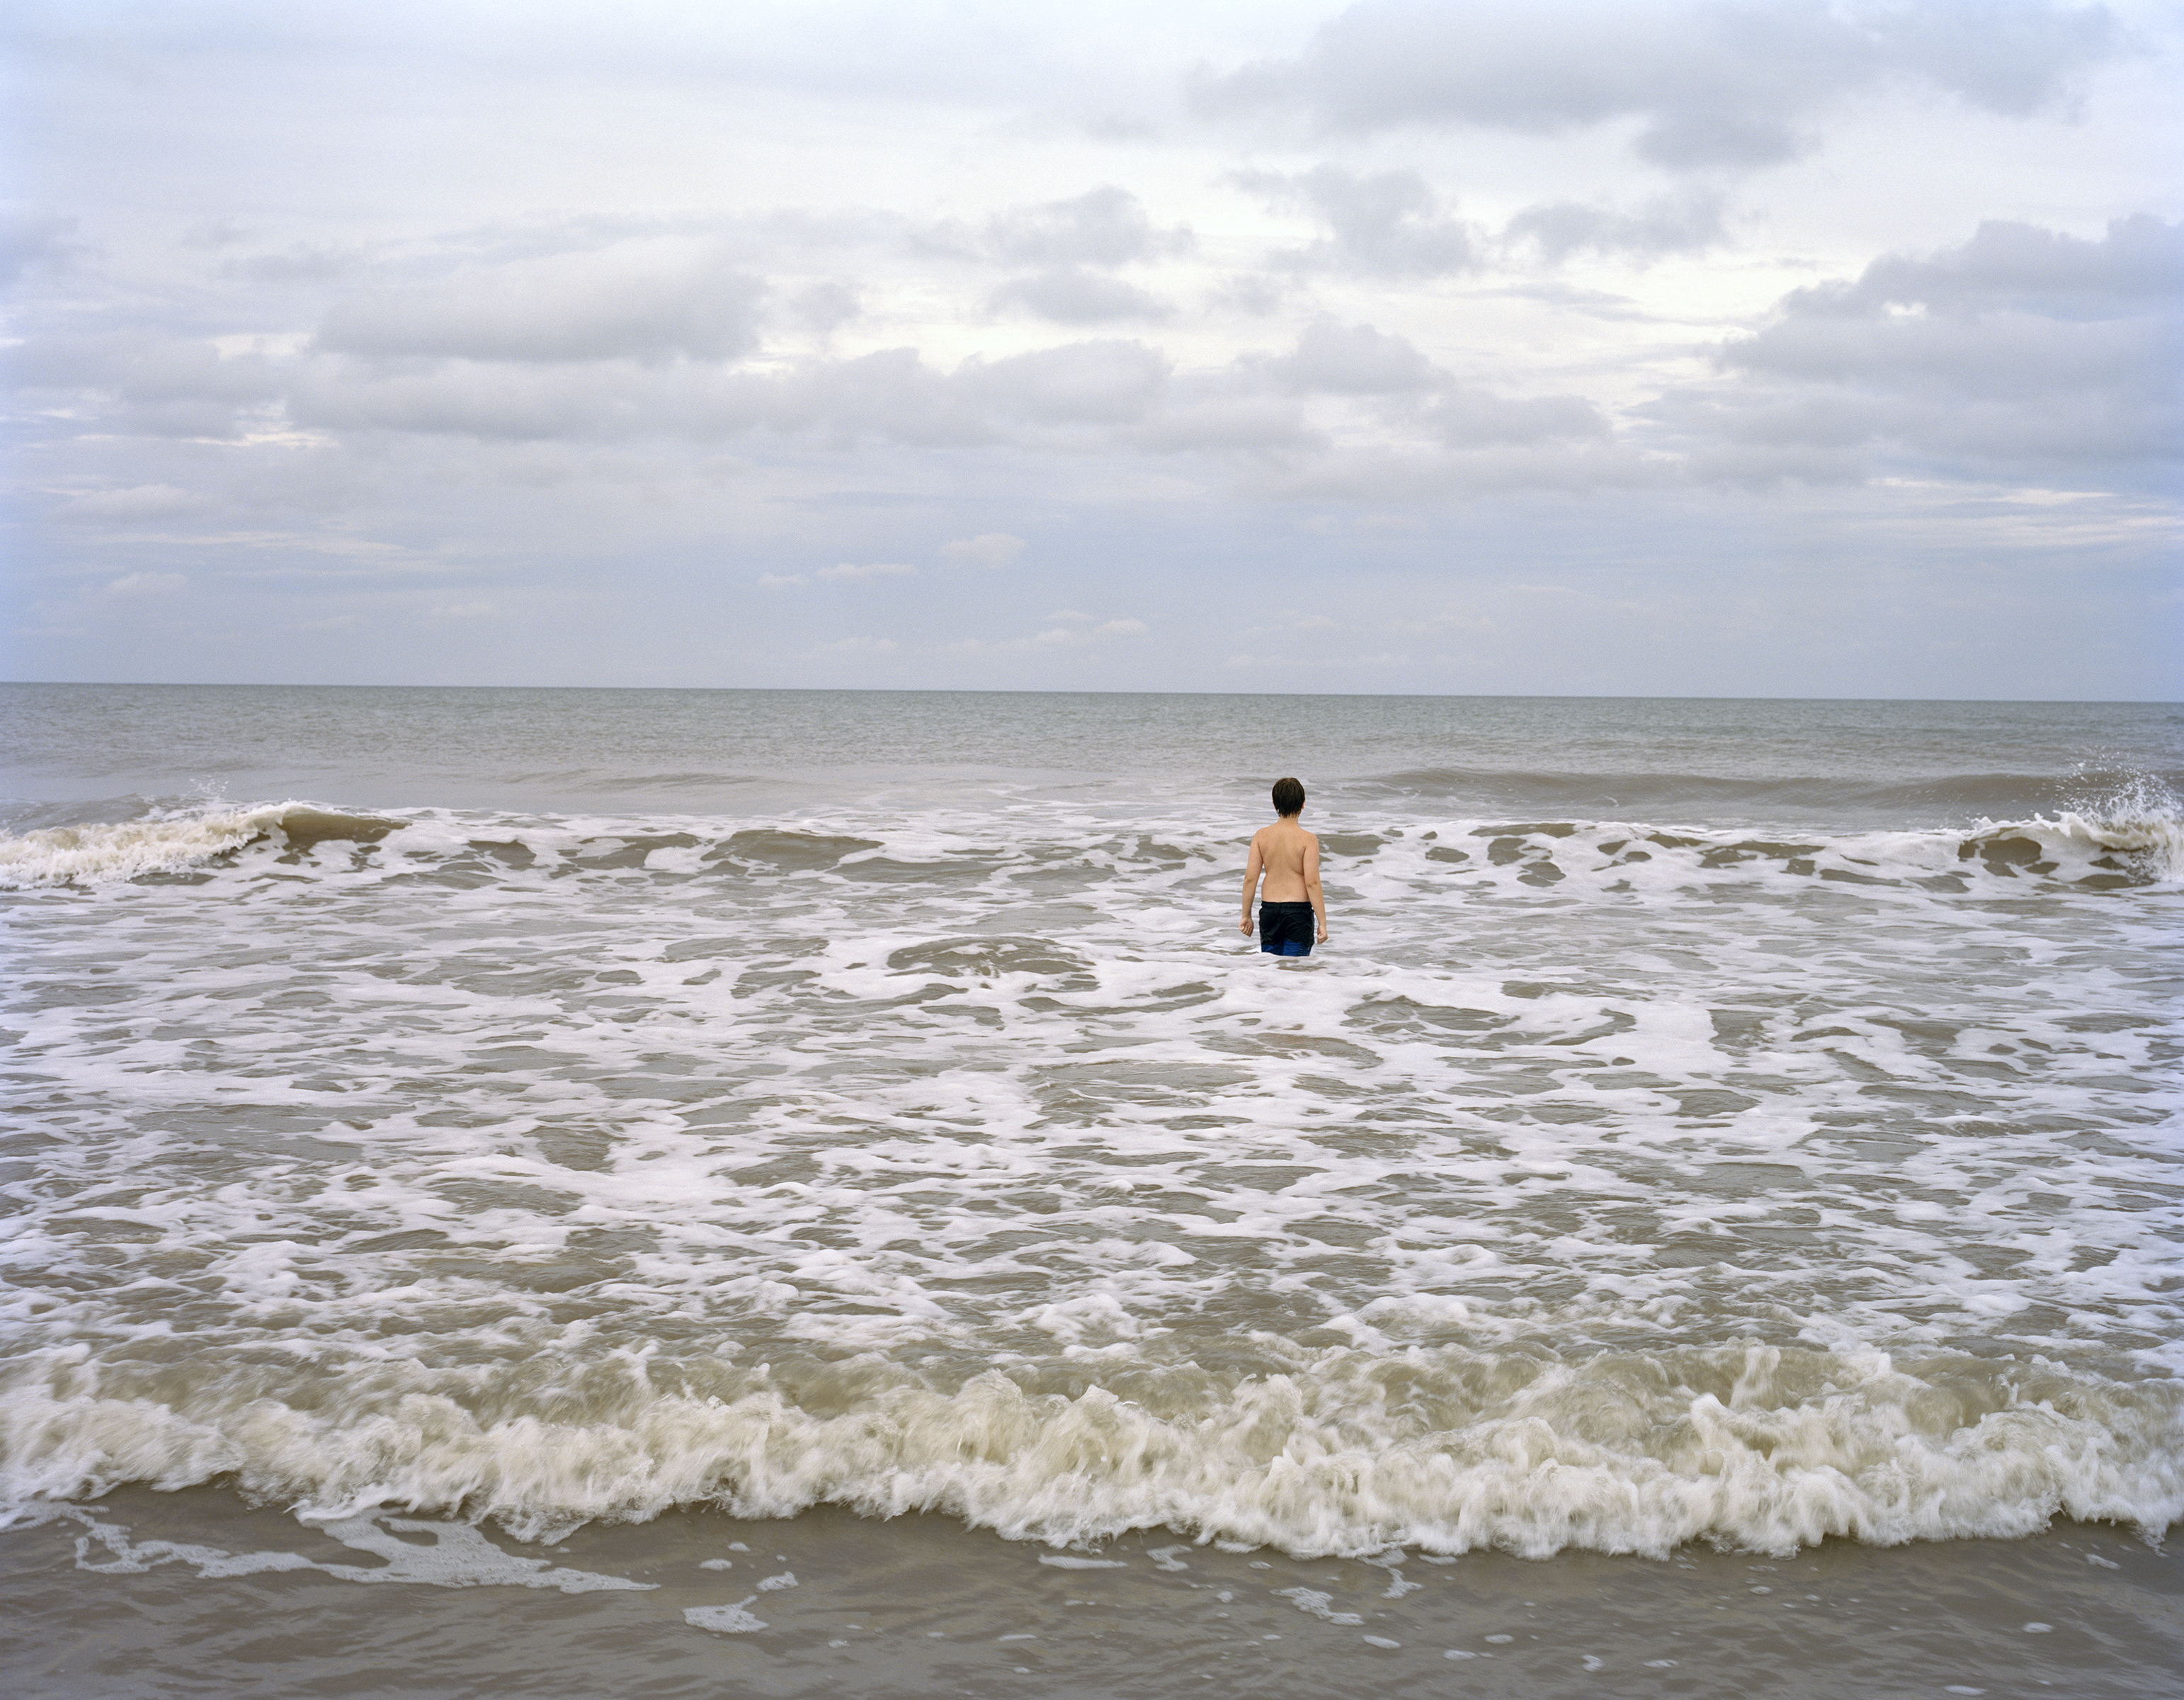 Rylan Steele, "Alone in the Ocean," 2018